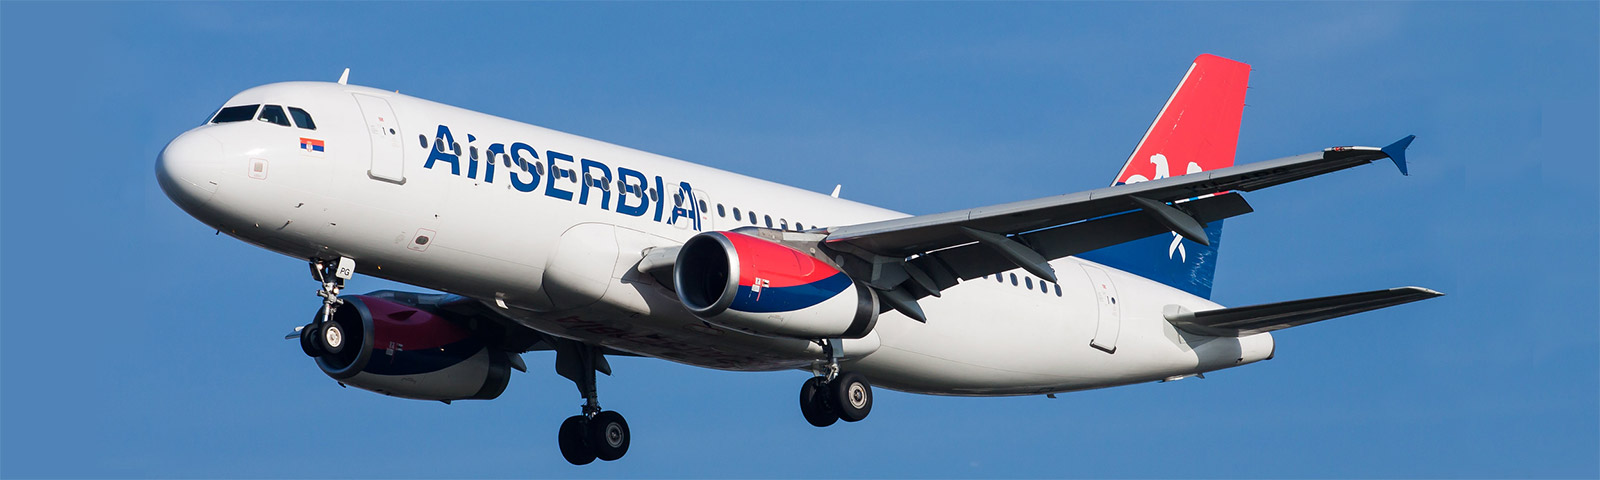 aeroplano in decollo della compagnia Air Serbia